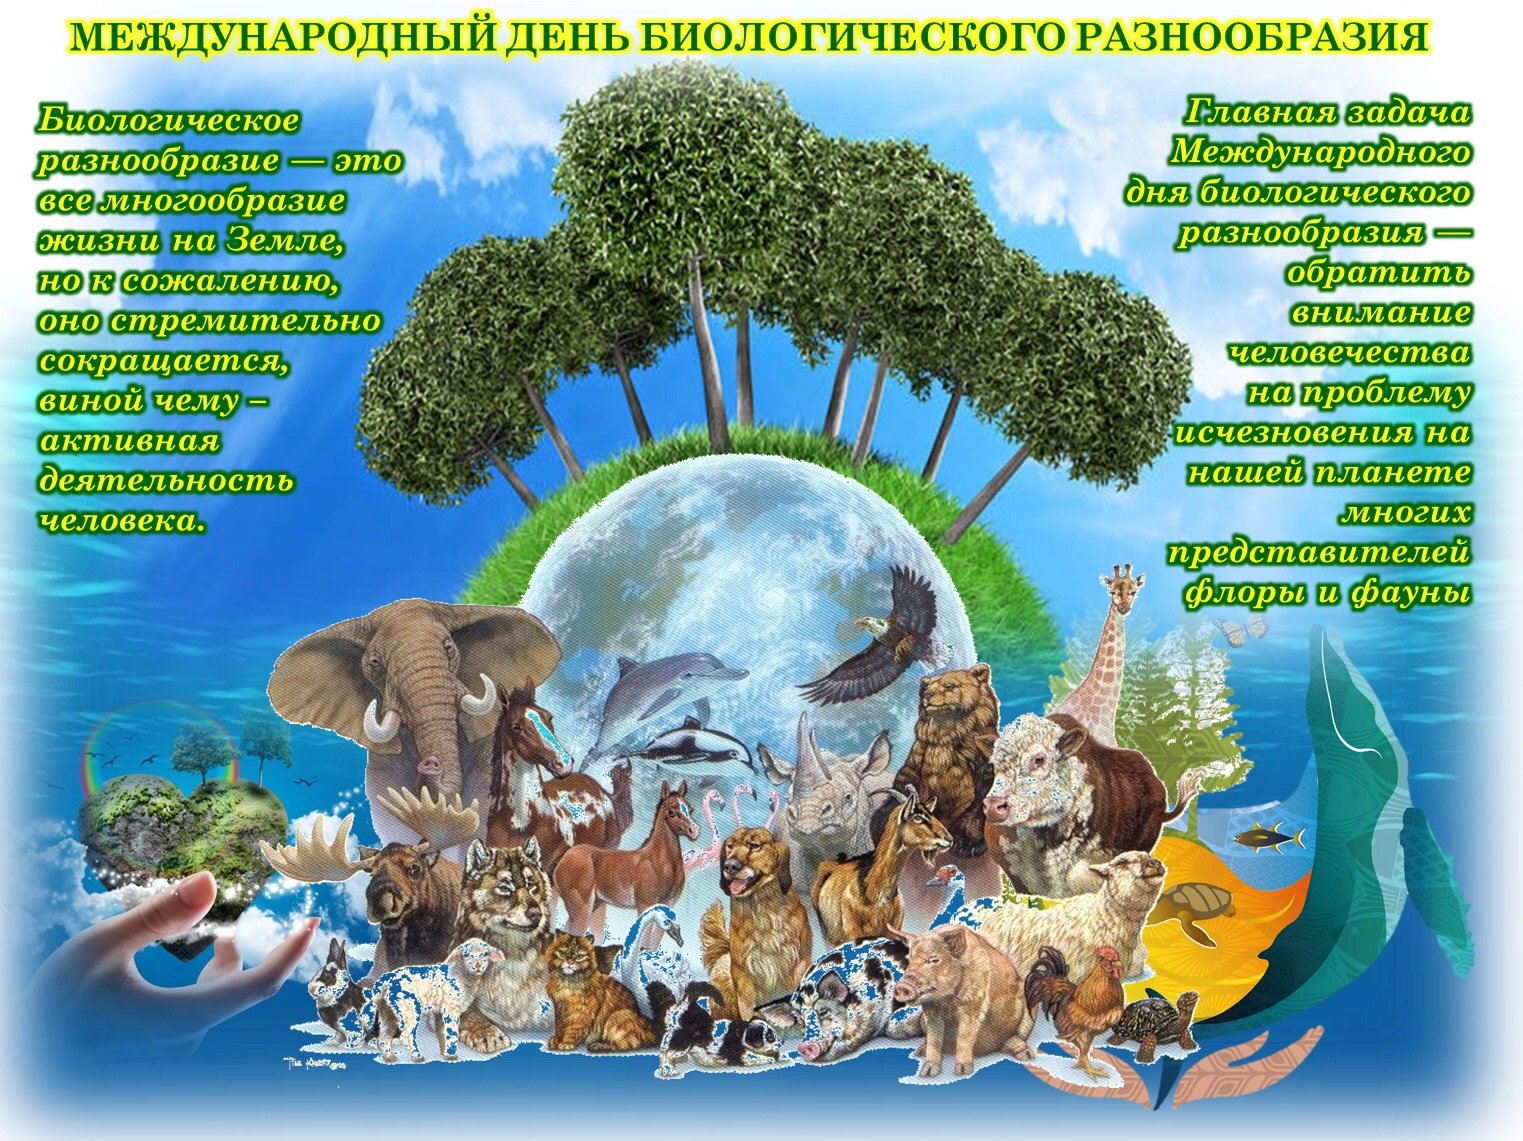 Международный день сохранения биологического разнообразия